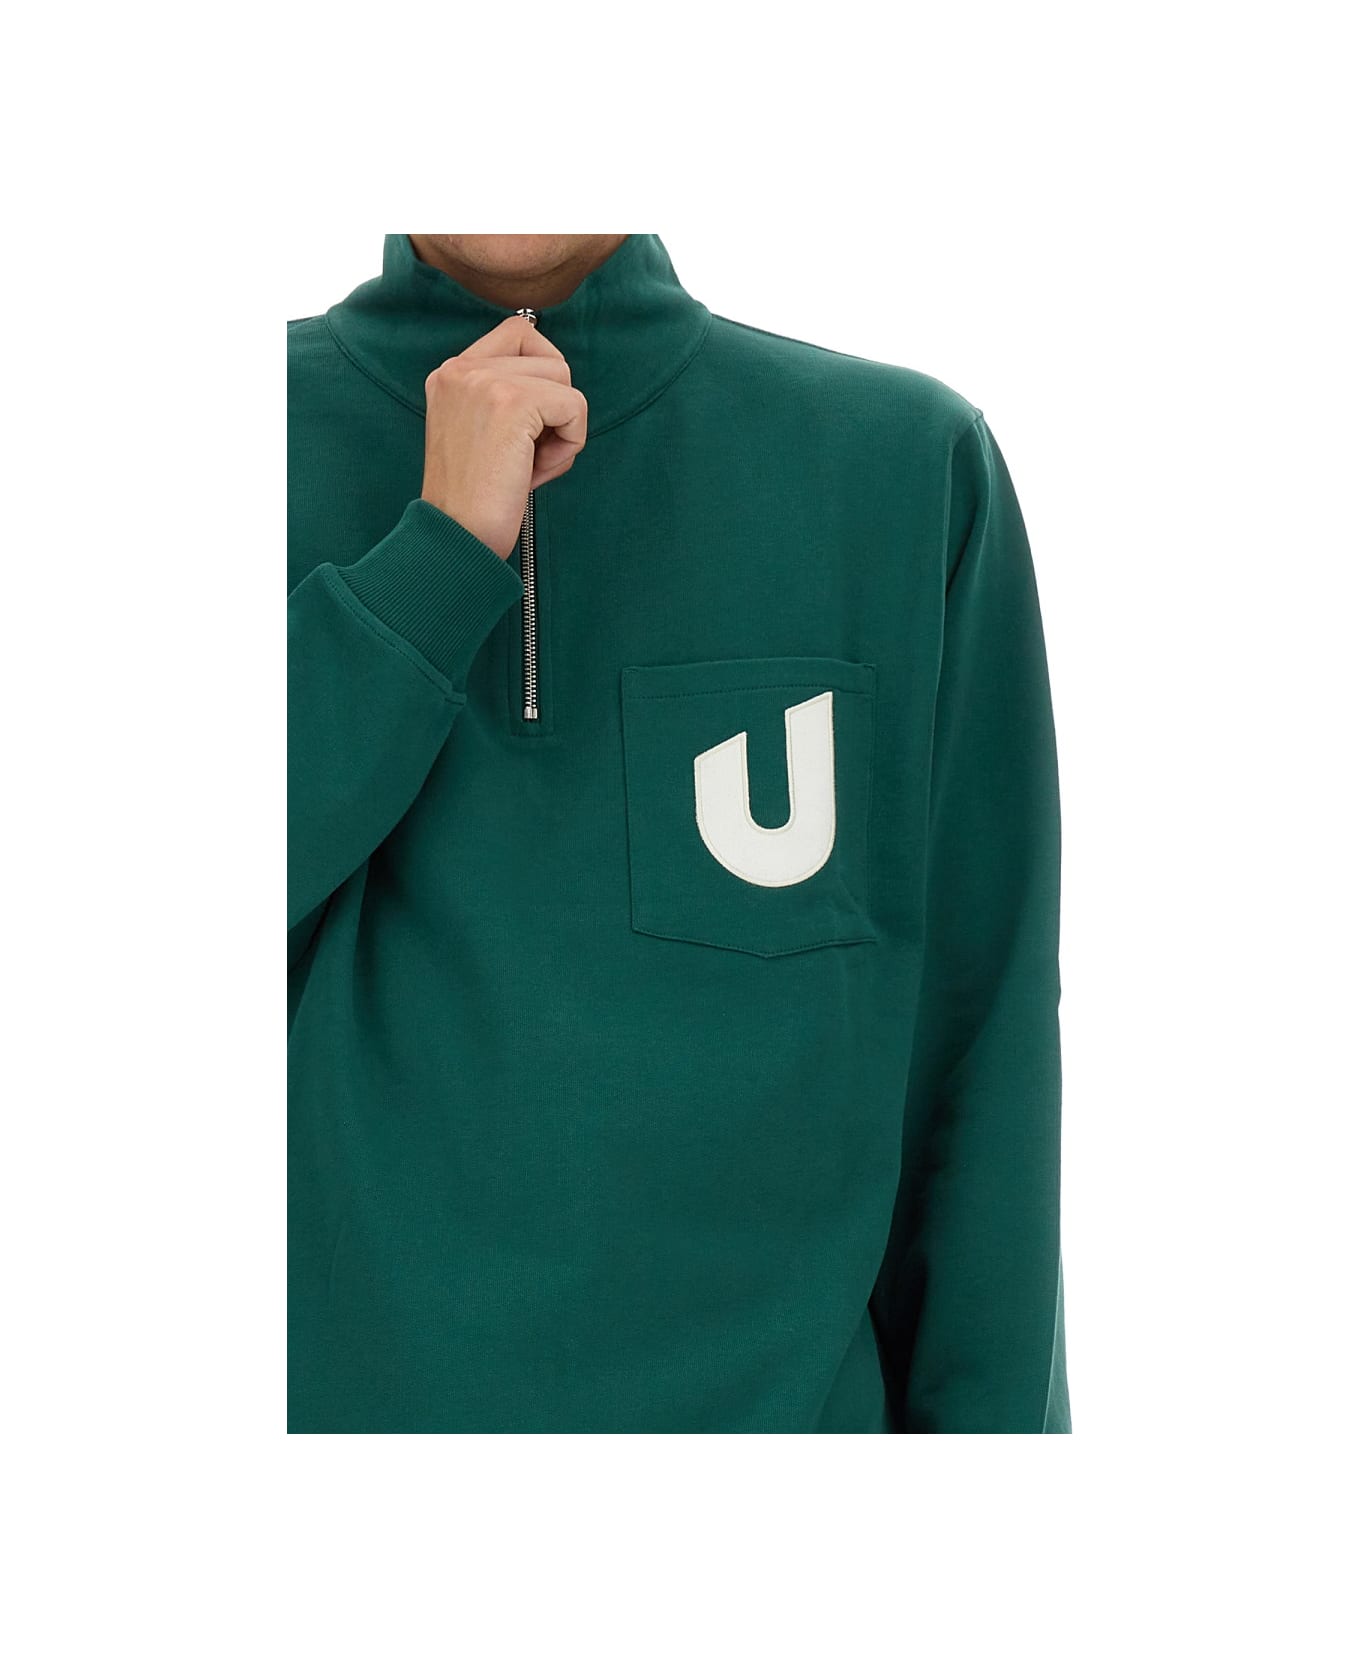 Umbro Logo Sweatshirt - GREEN